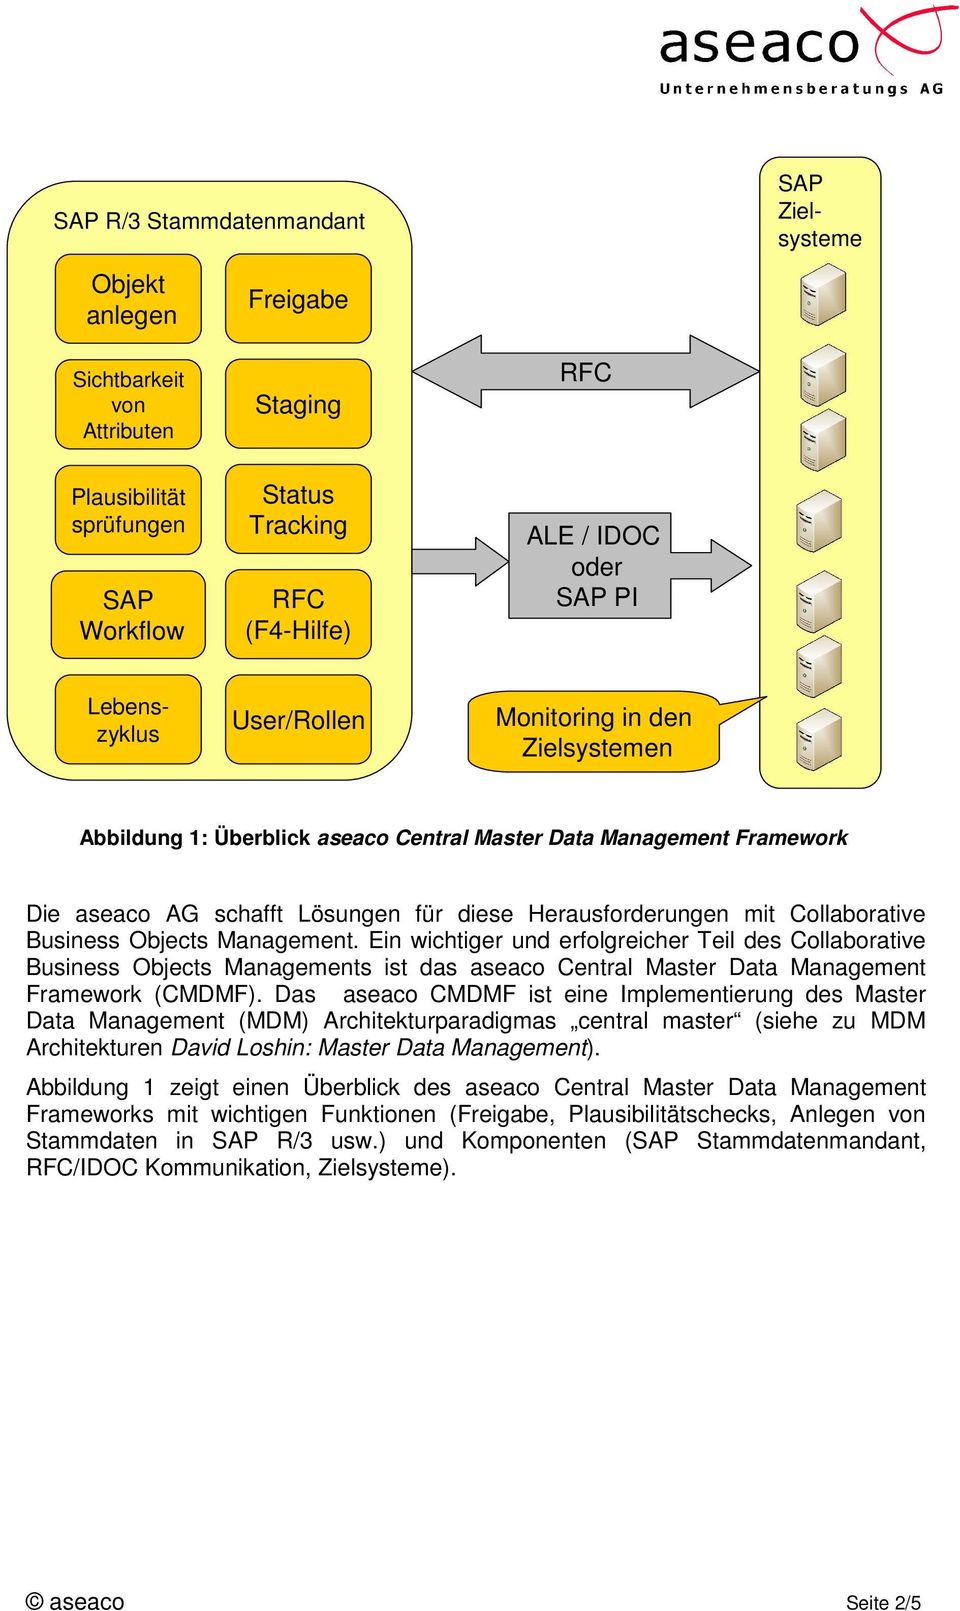 Collaborative Business Objects Management. Ein wichtiger und erfolgreicher Teil des Collaborative Business Objects Managements ist das aseaco Central Master Data Management Framework (CMDMF).